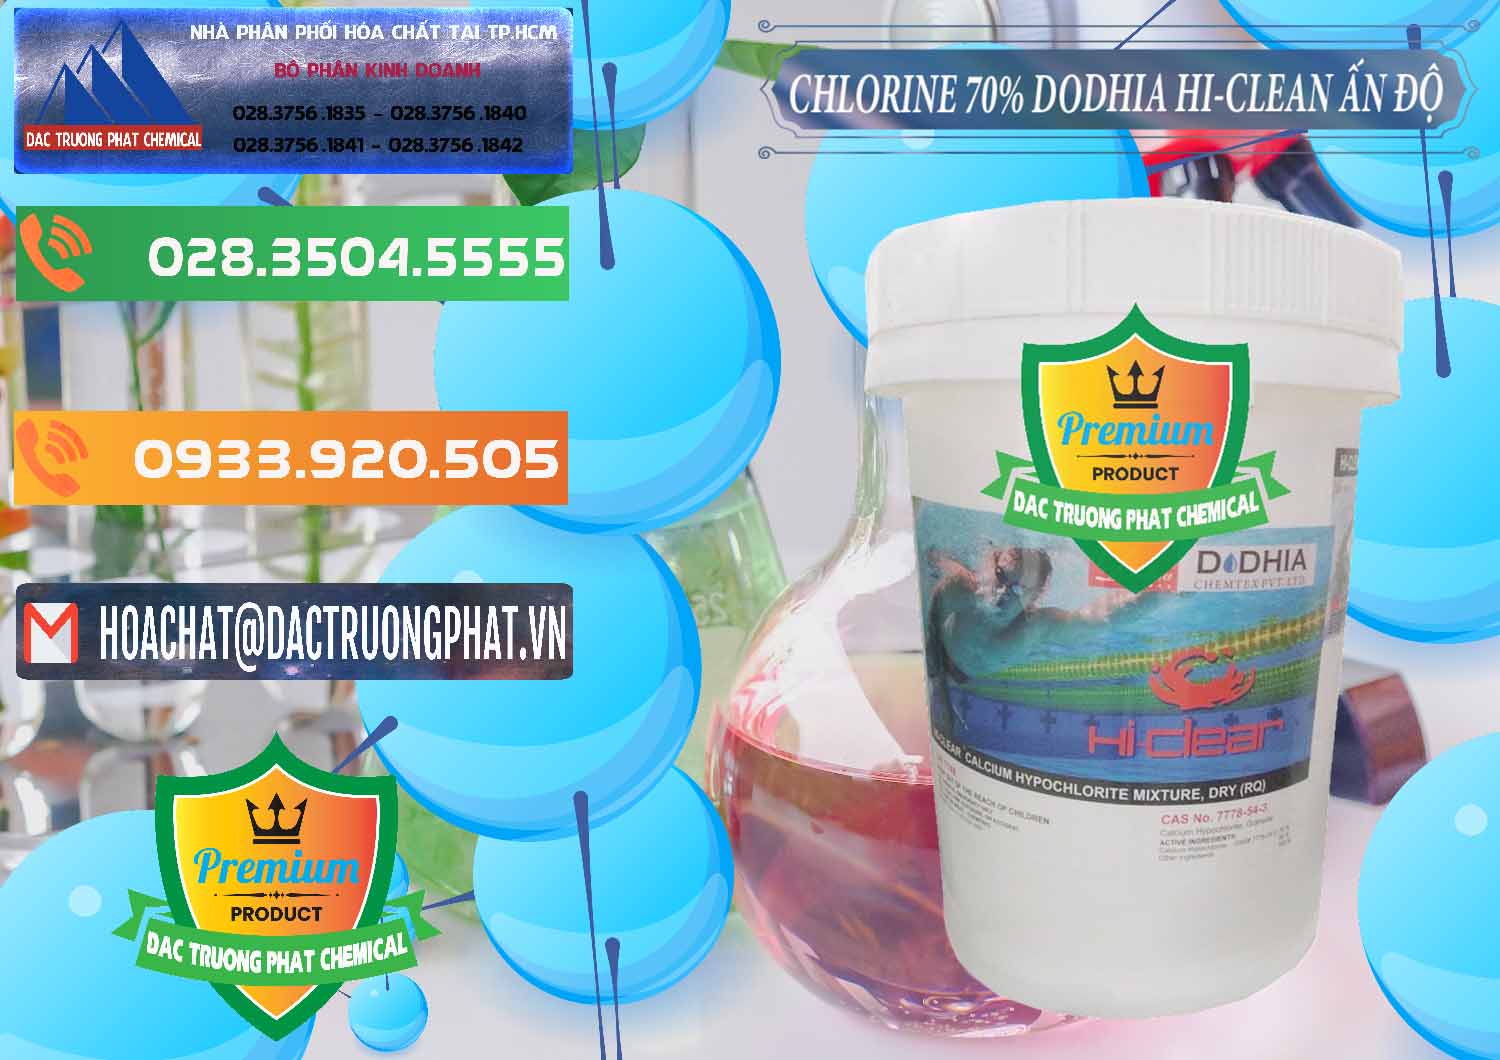 Chuyên bán và phân phối Chlorine – Clorin 70% Dodhia Hi-Clean Ấn Độ India - 0214 - Đơn vị phân phối & bán hóa chất tại TP.HCM - hoachatxulynuoc.com.vn